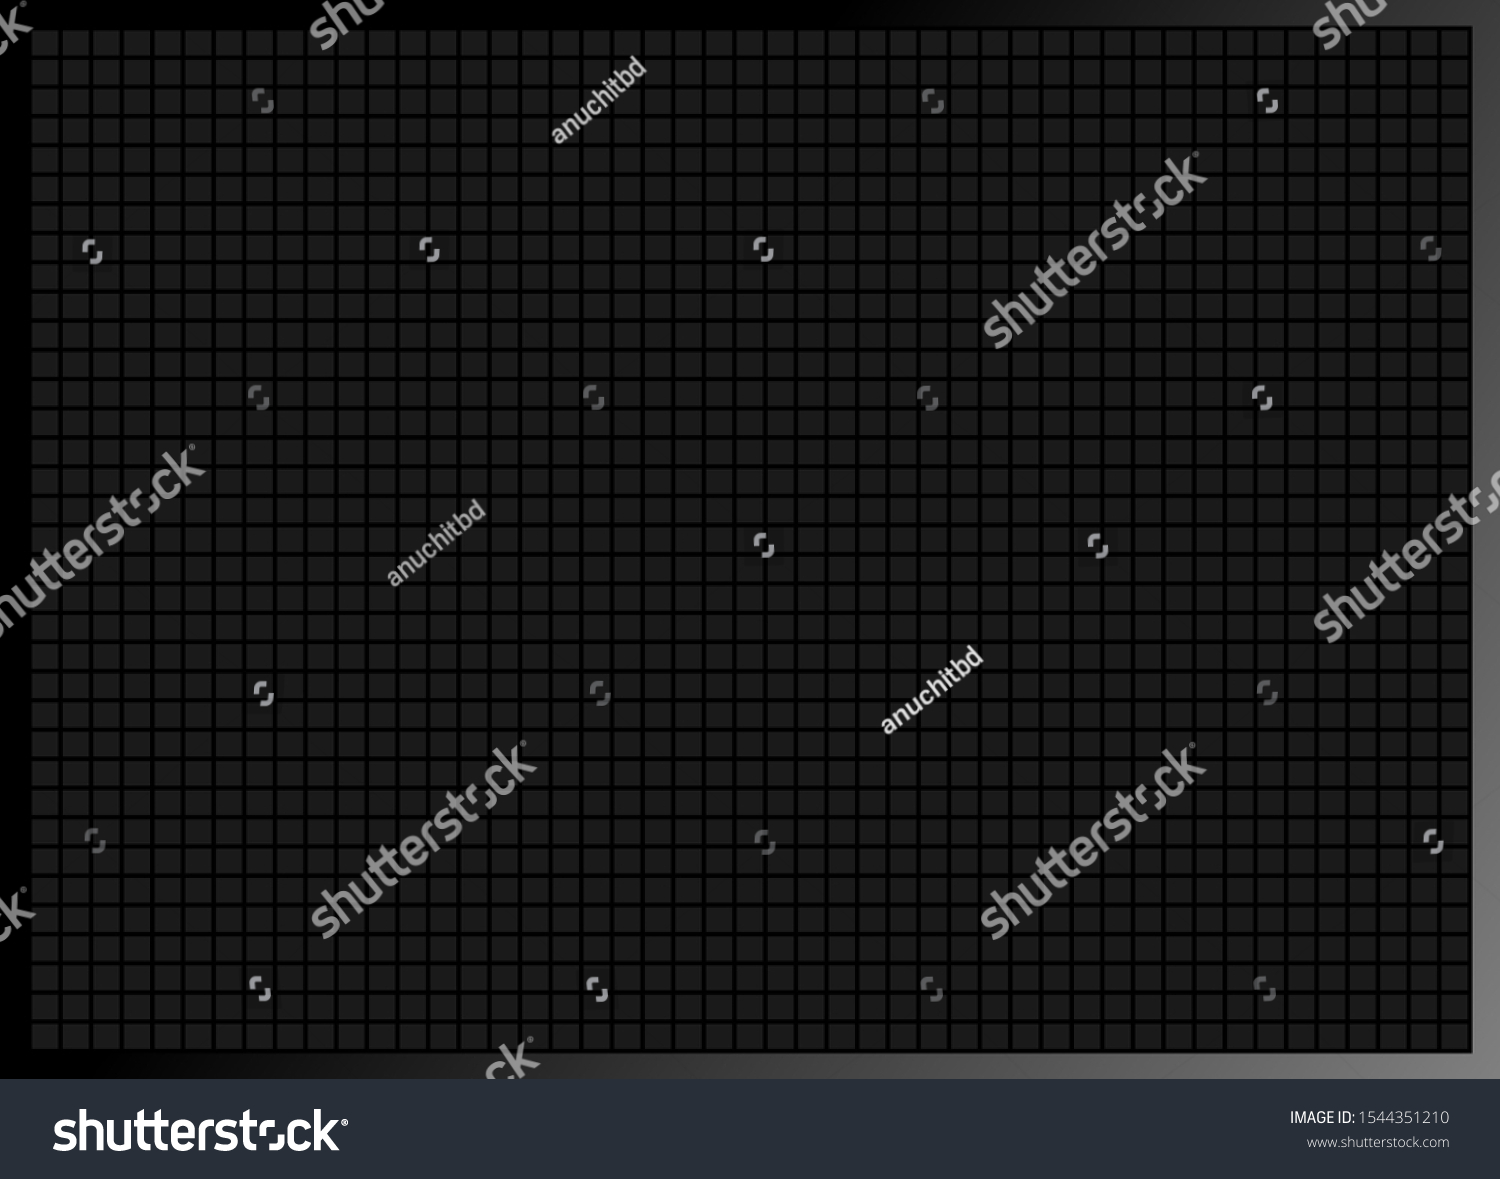 SVG of blank pixel digital board background, display led board concept svg